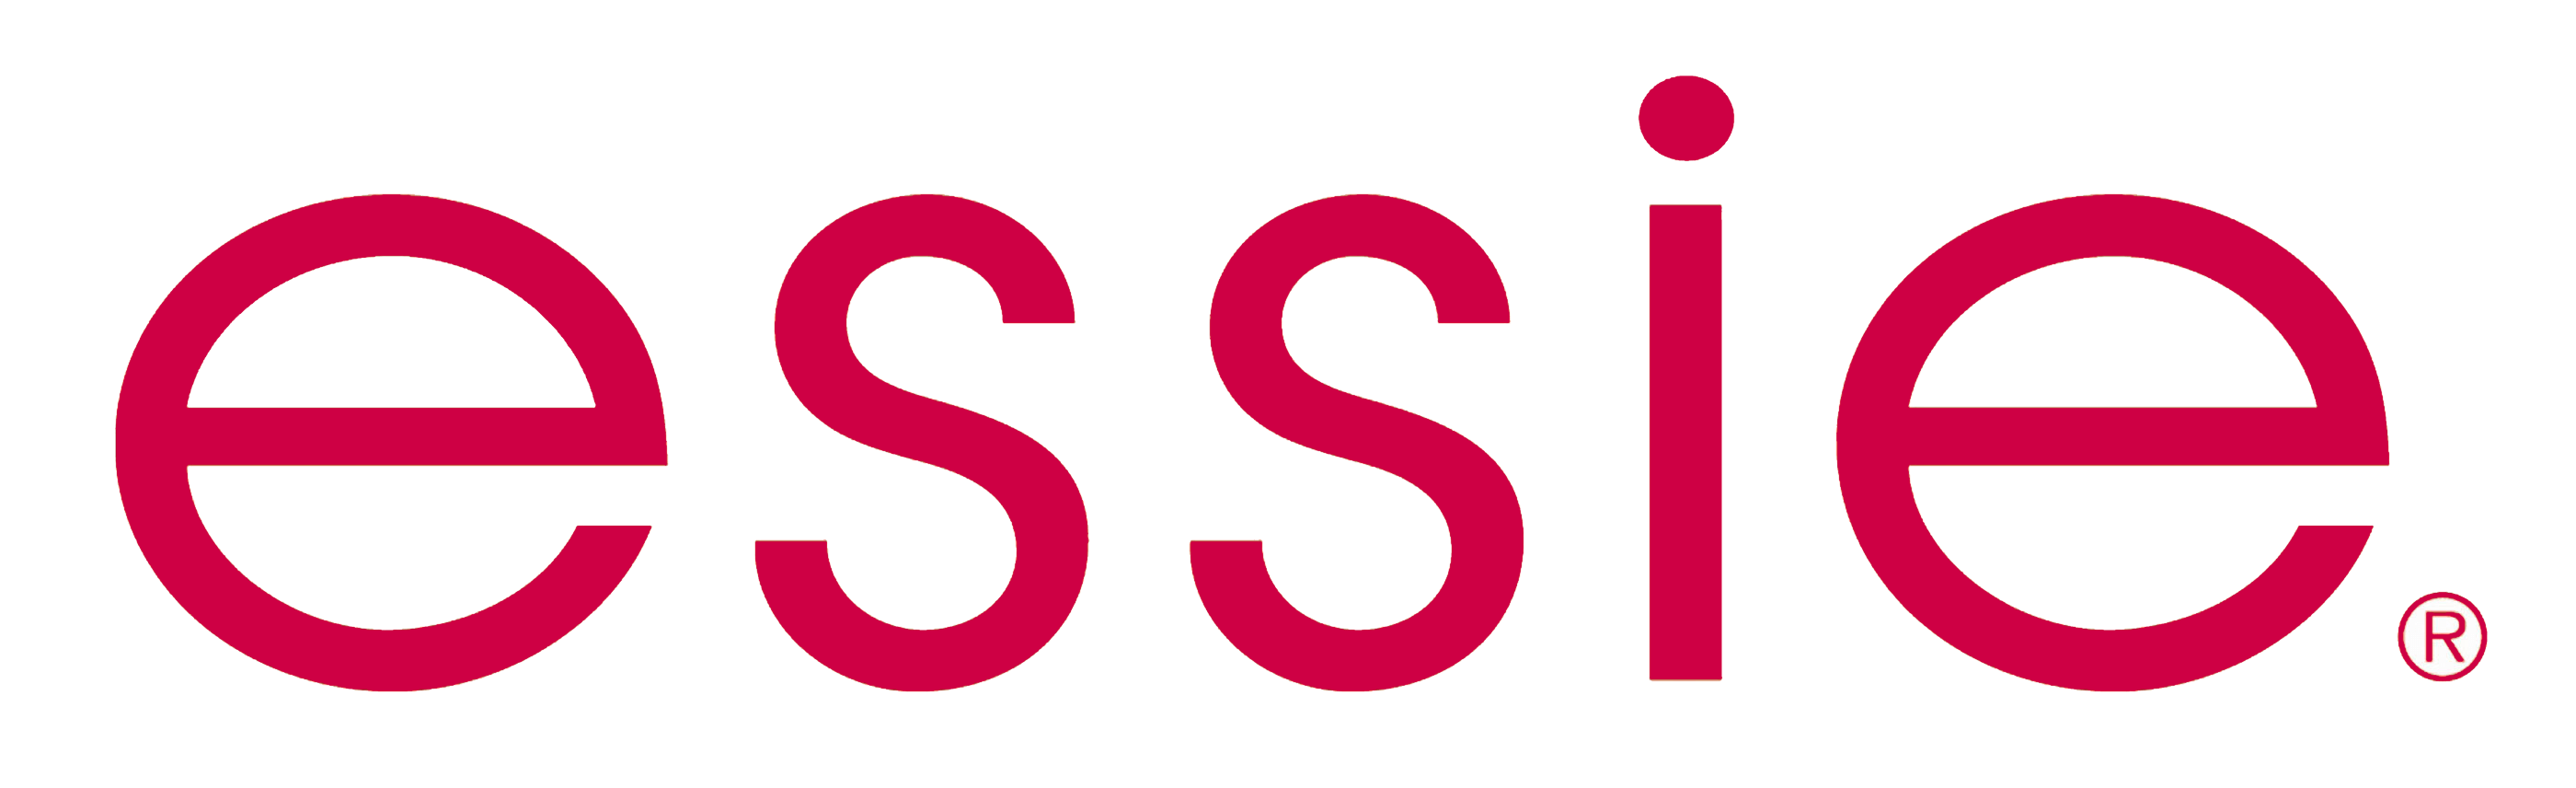 Essie Logo - Essie – Logos Download